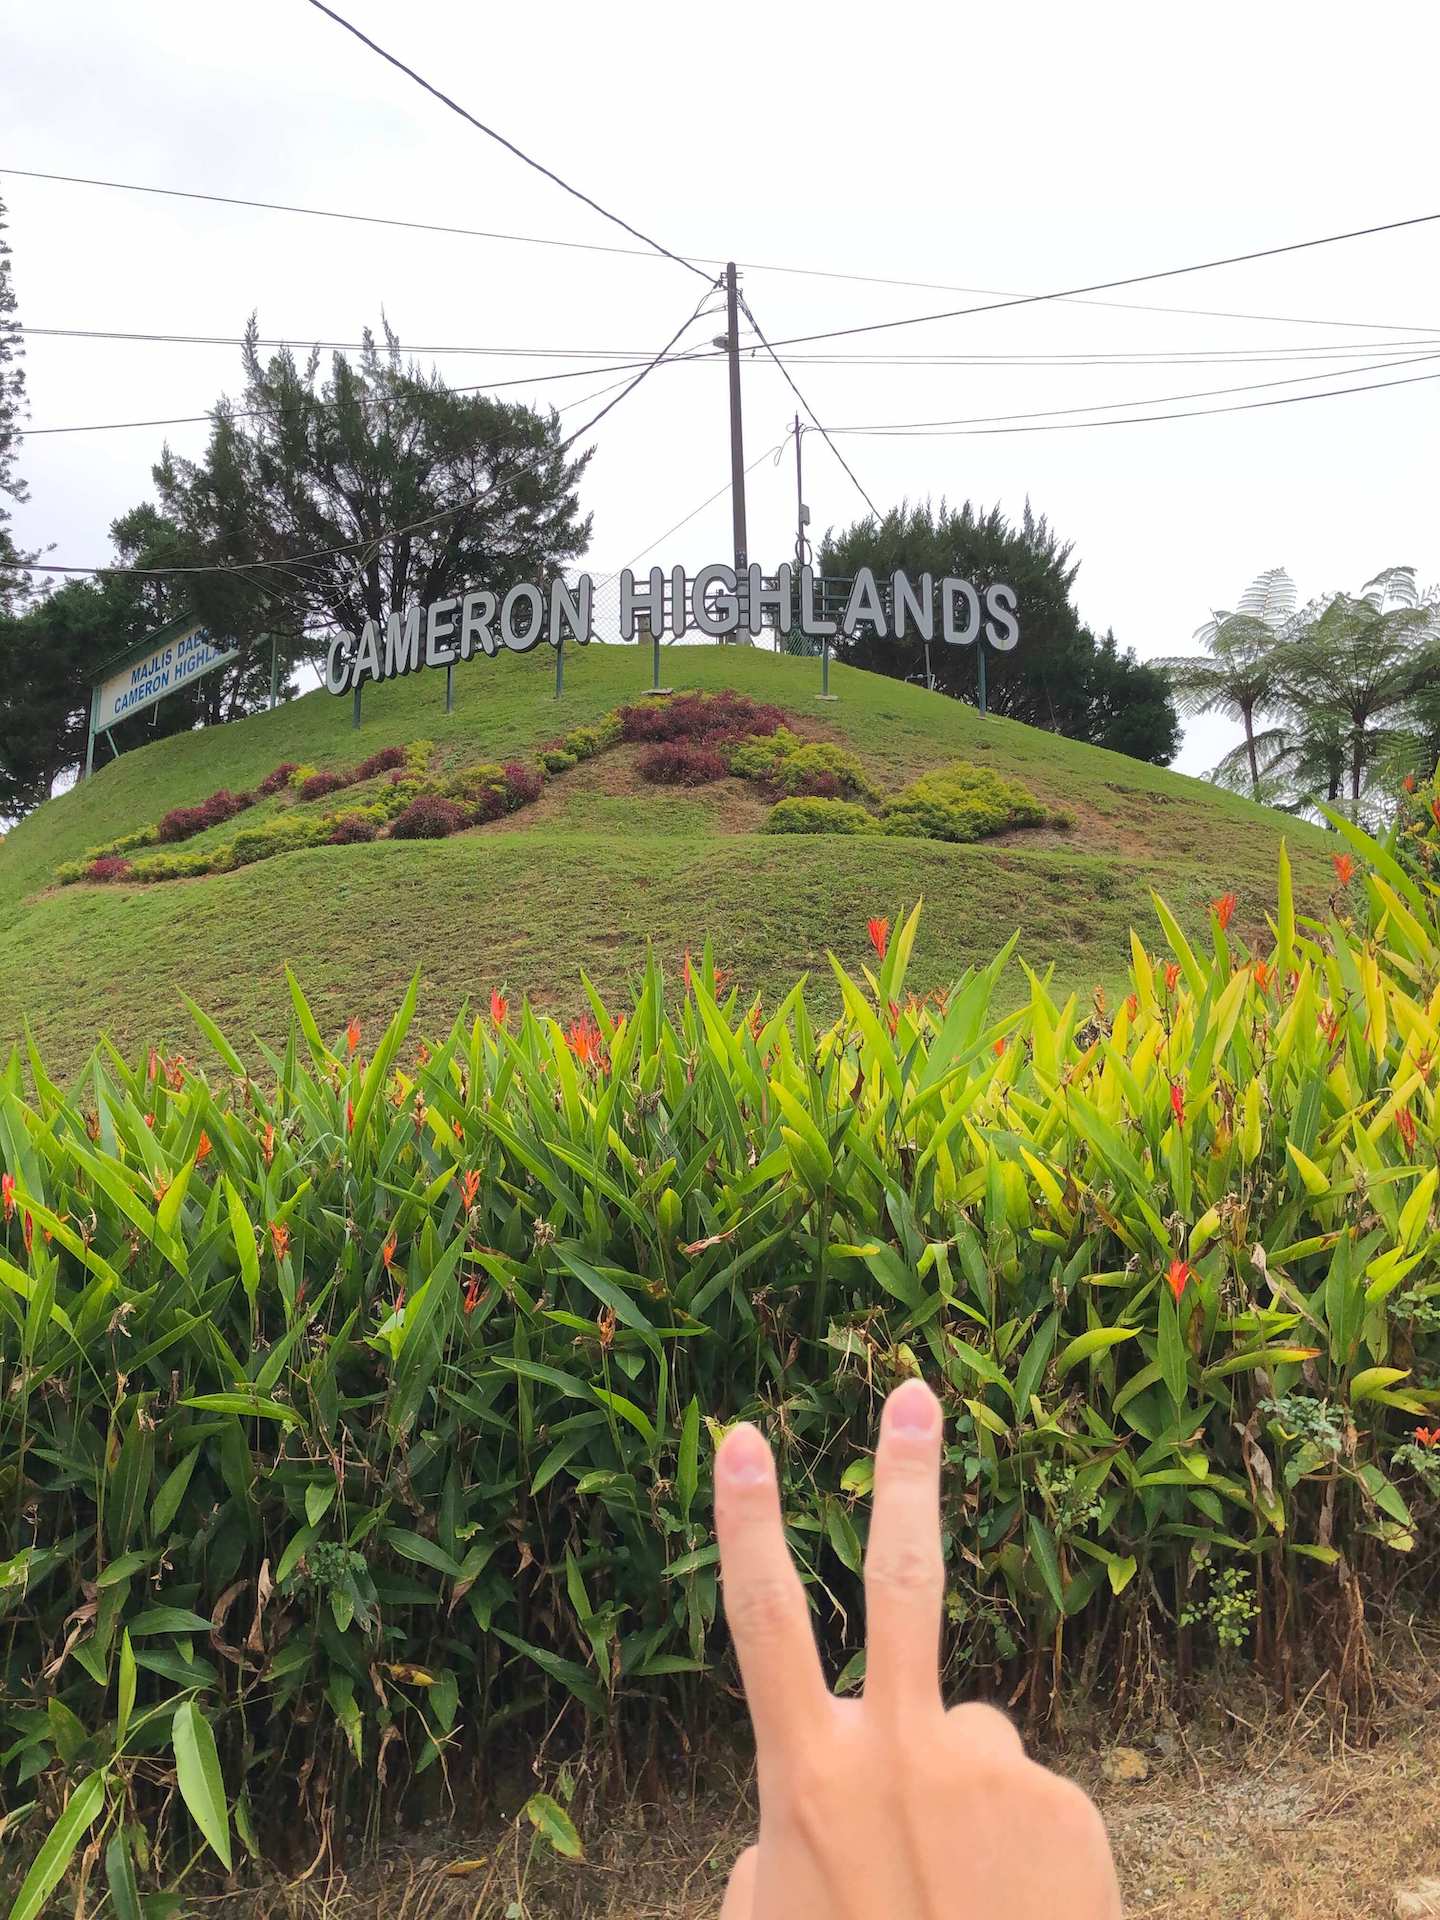 the word Cameron Highlands at Tanah Rata